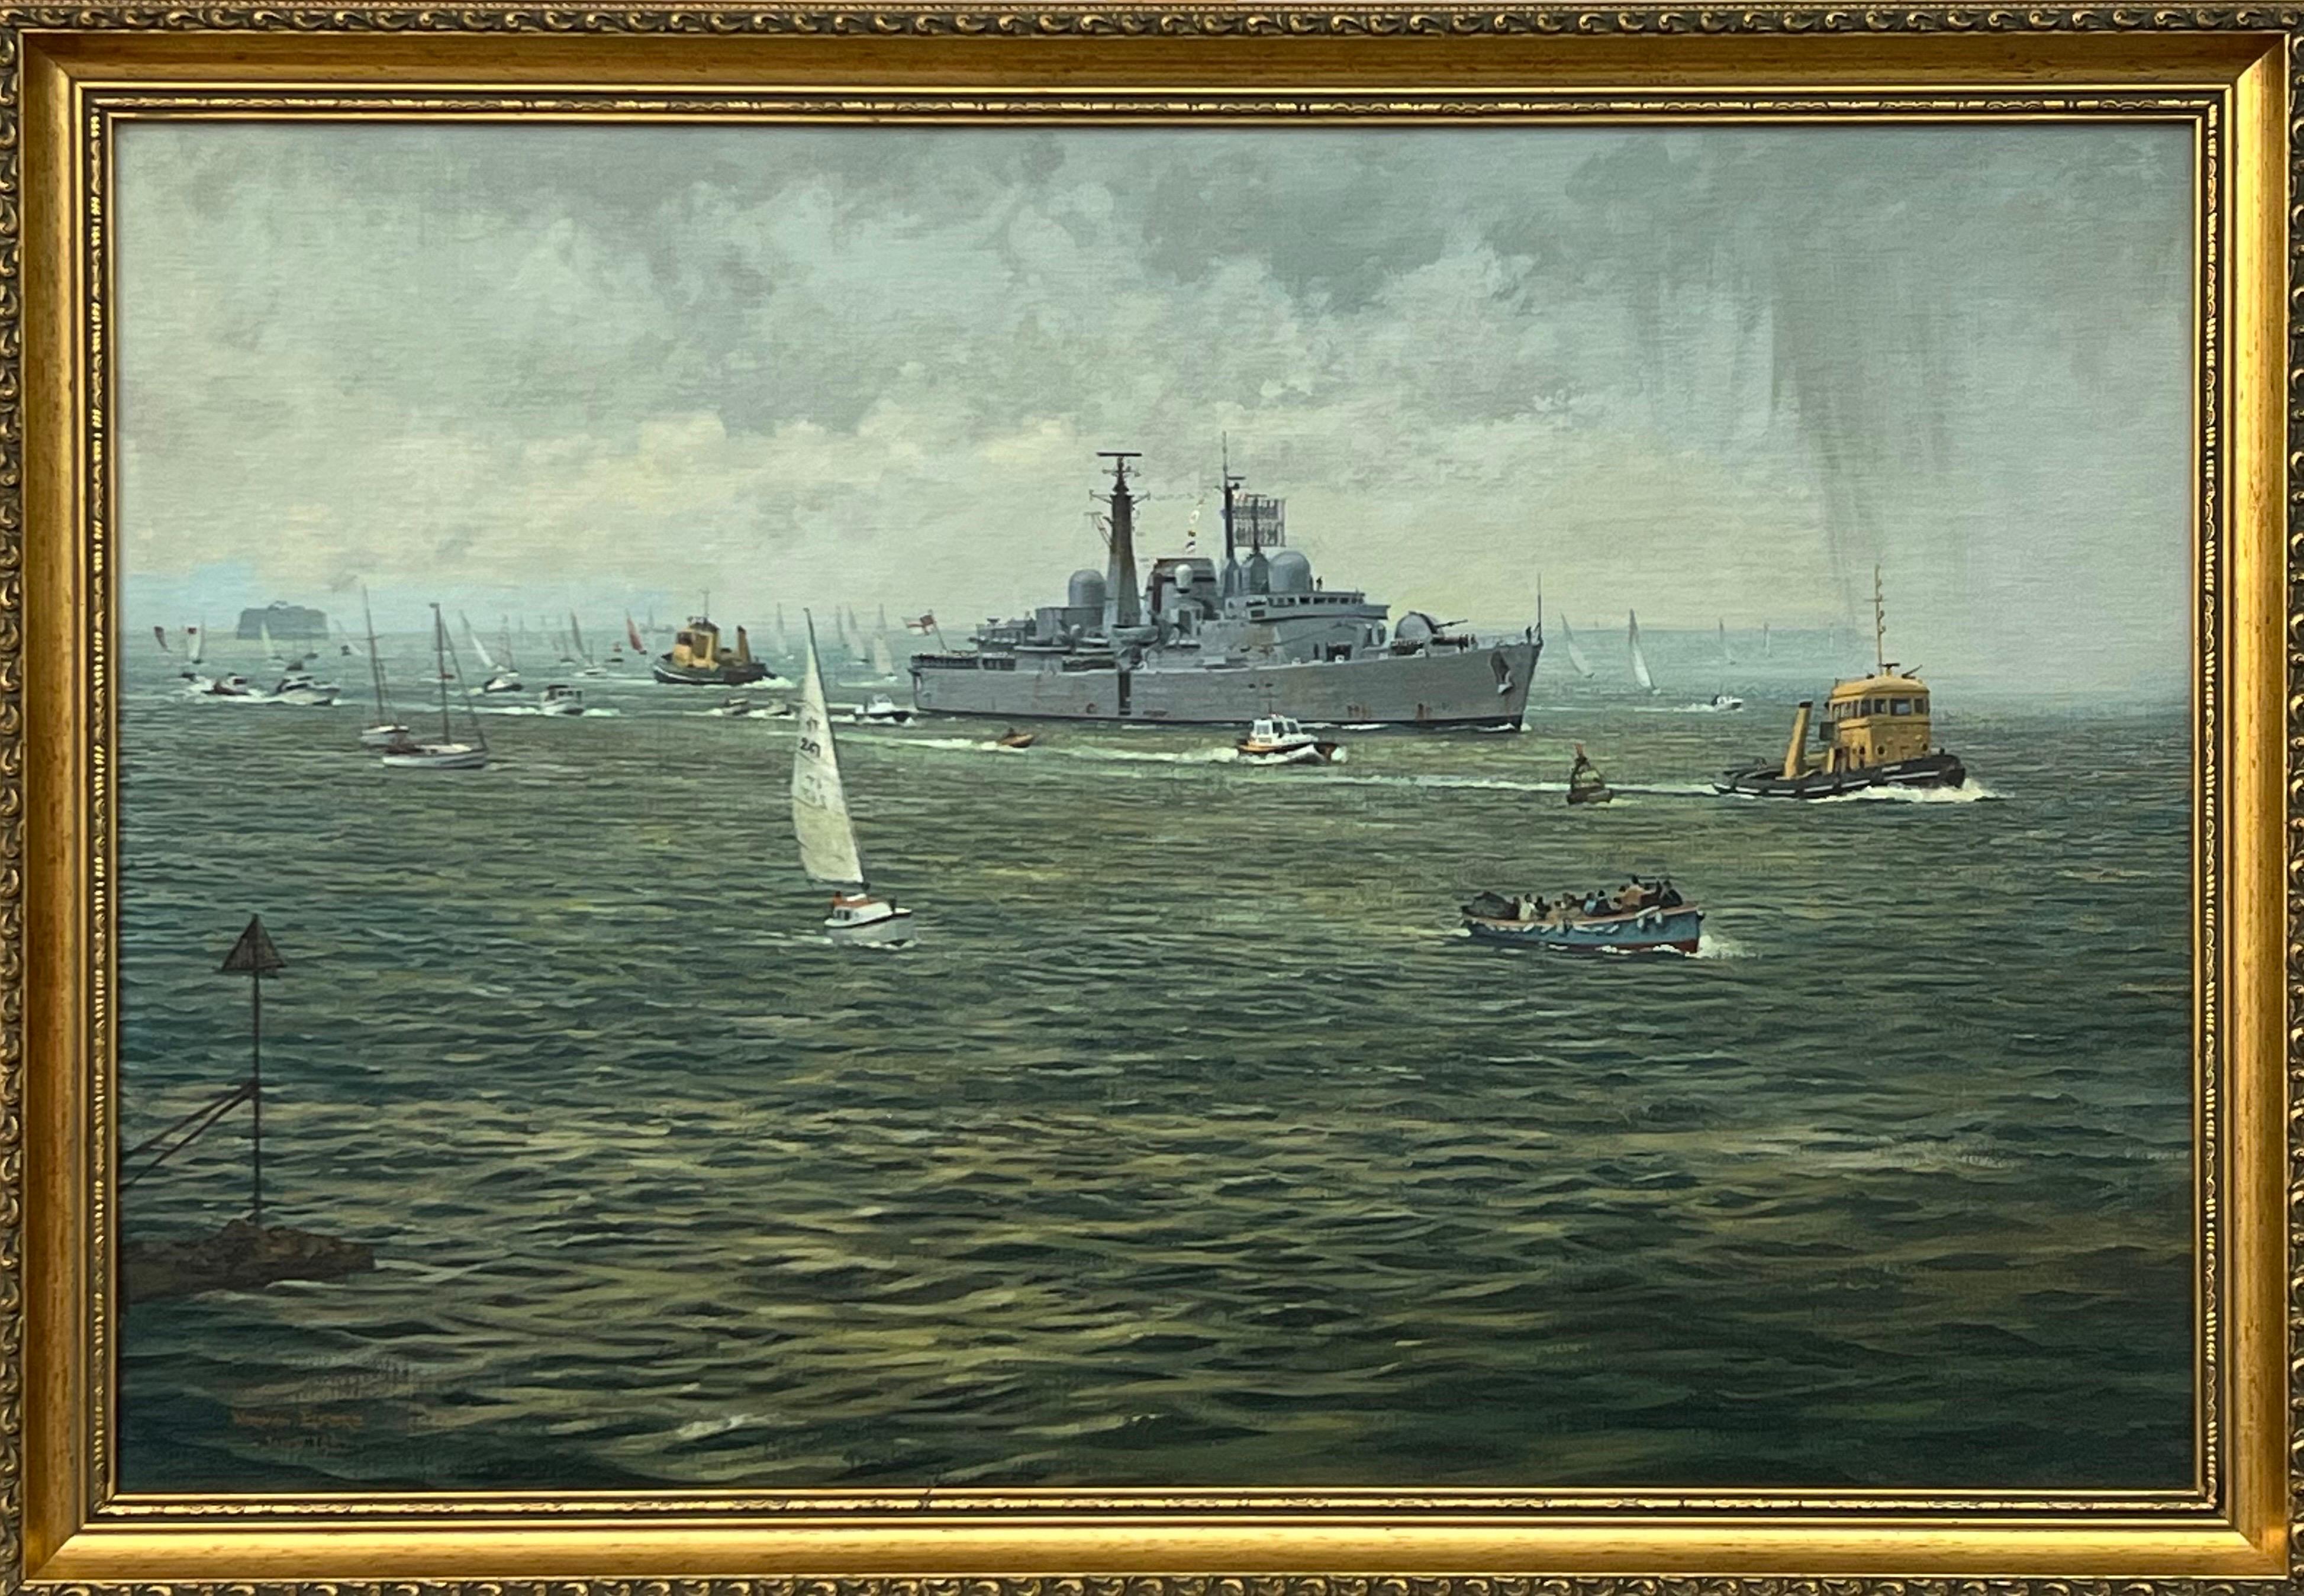 Norman Elford Landscape Painting – HMS Glasgow kehrt von den Falkland-Inseln zurück - Schifffahrtsszene Kriegsschiff & andere Schiffe